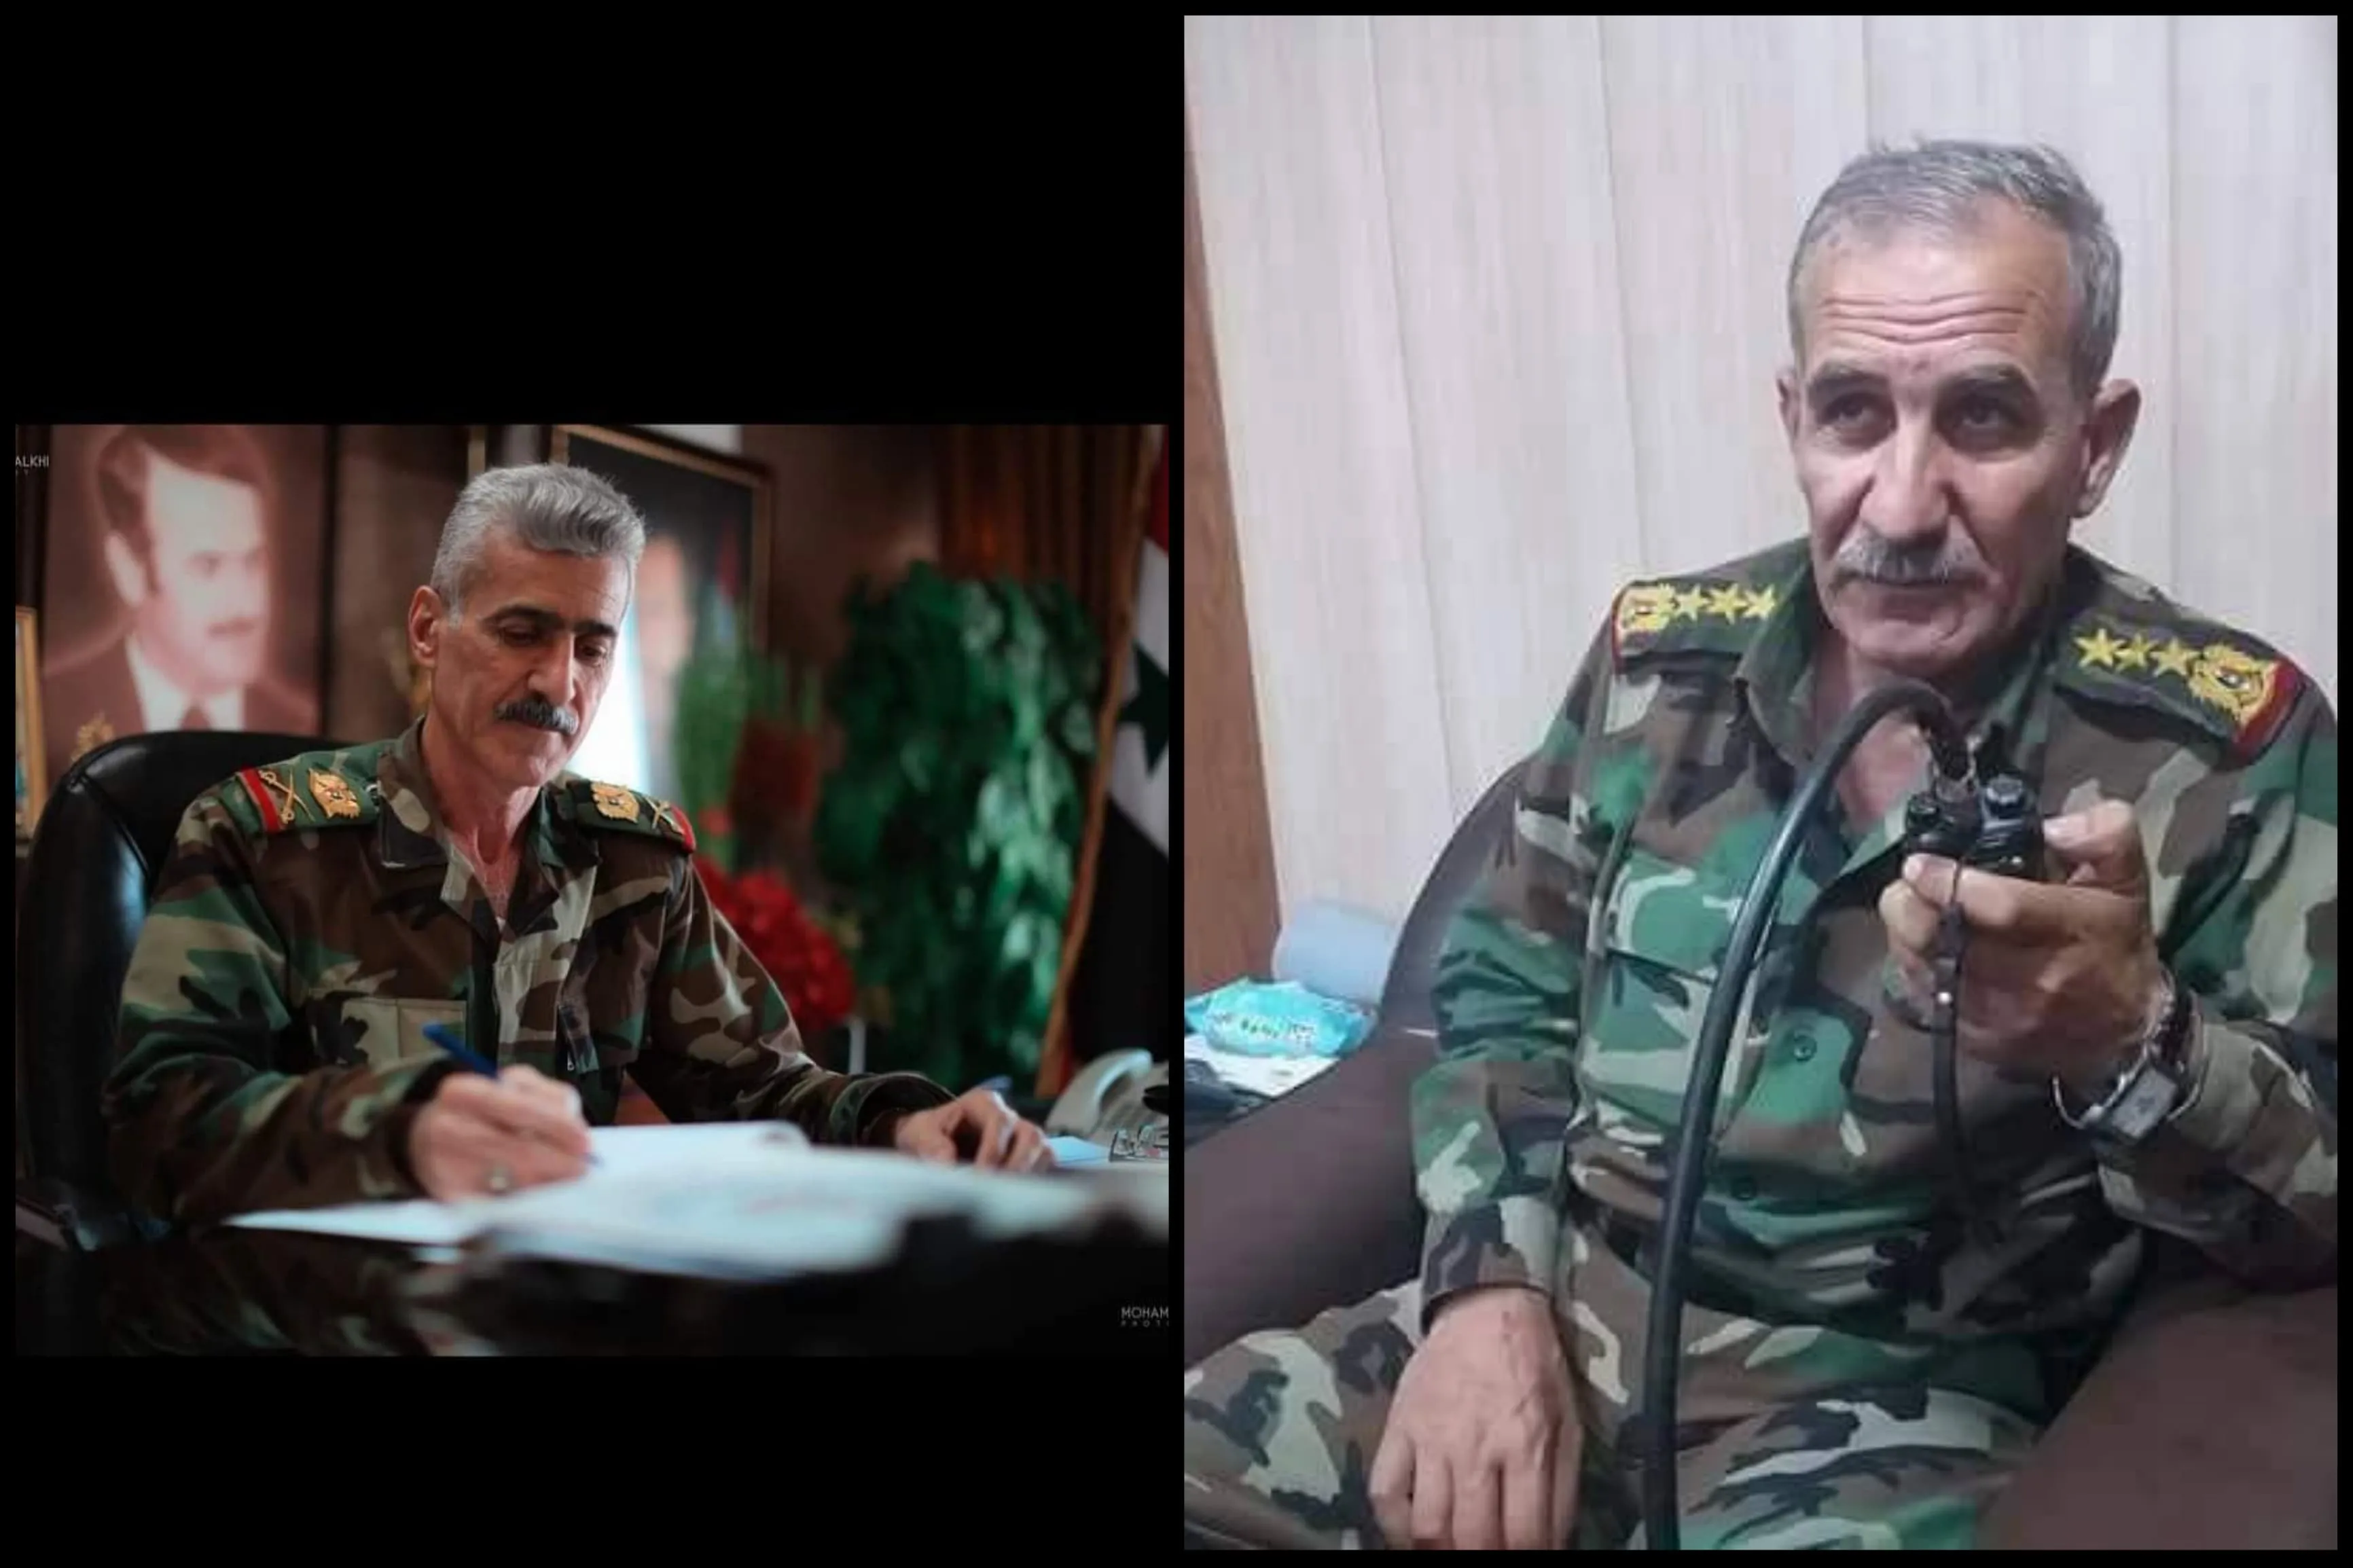  اللواء المجرم "صالح سليمان العبدالله"، رئيساً للجنة الأمنية والعسكرية في محافظة حلب، و اللواء الركن "حاتم عباس أبو صالح"، قائداً للمنطقة الجنوبية.